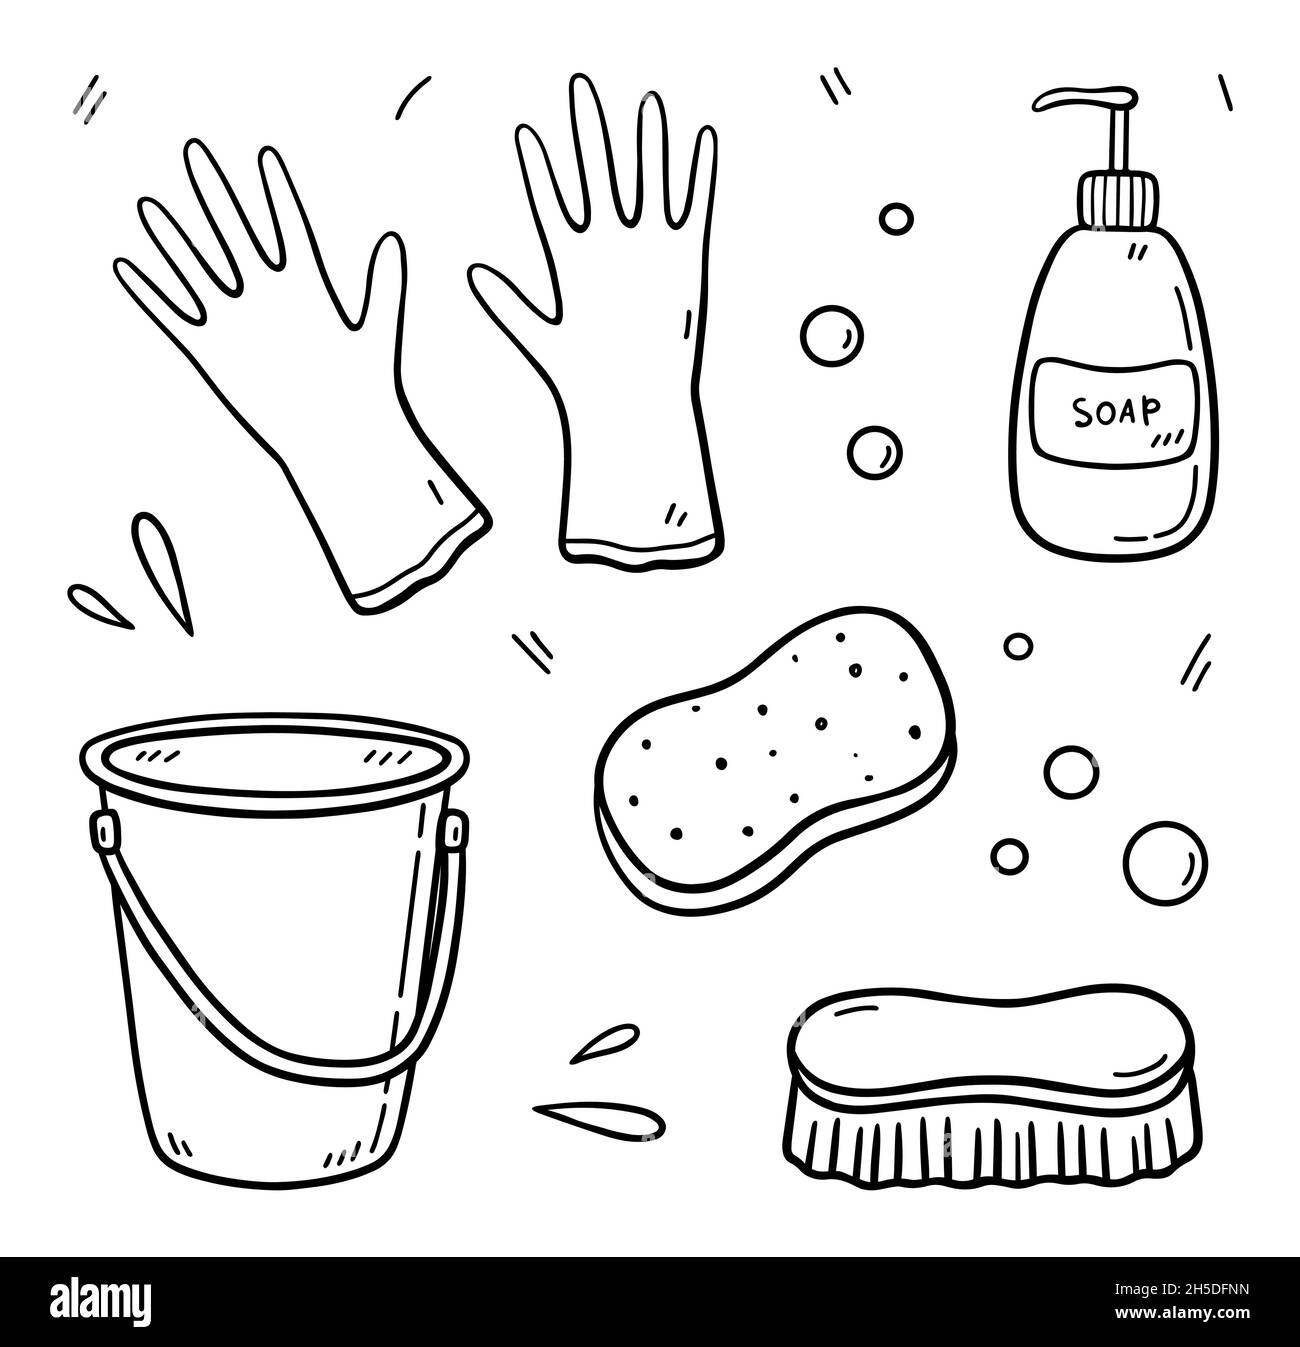 Juego de artículos de tallarines para limpieza - cubo, guantes de goma, jabón, esponja y cepillo de fregar. Equipo de trabajo para mantener la casa limpia. Ilustración vectorial dibujada a mano sobre fondo blanco. Ilustración del Vector